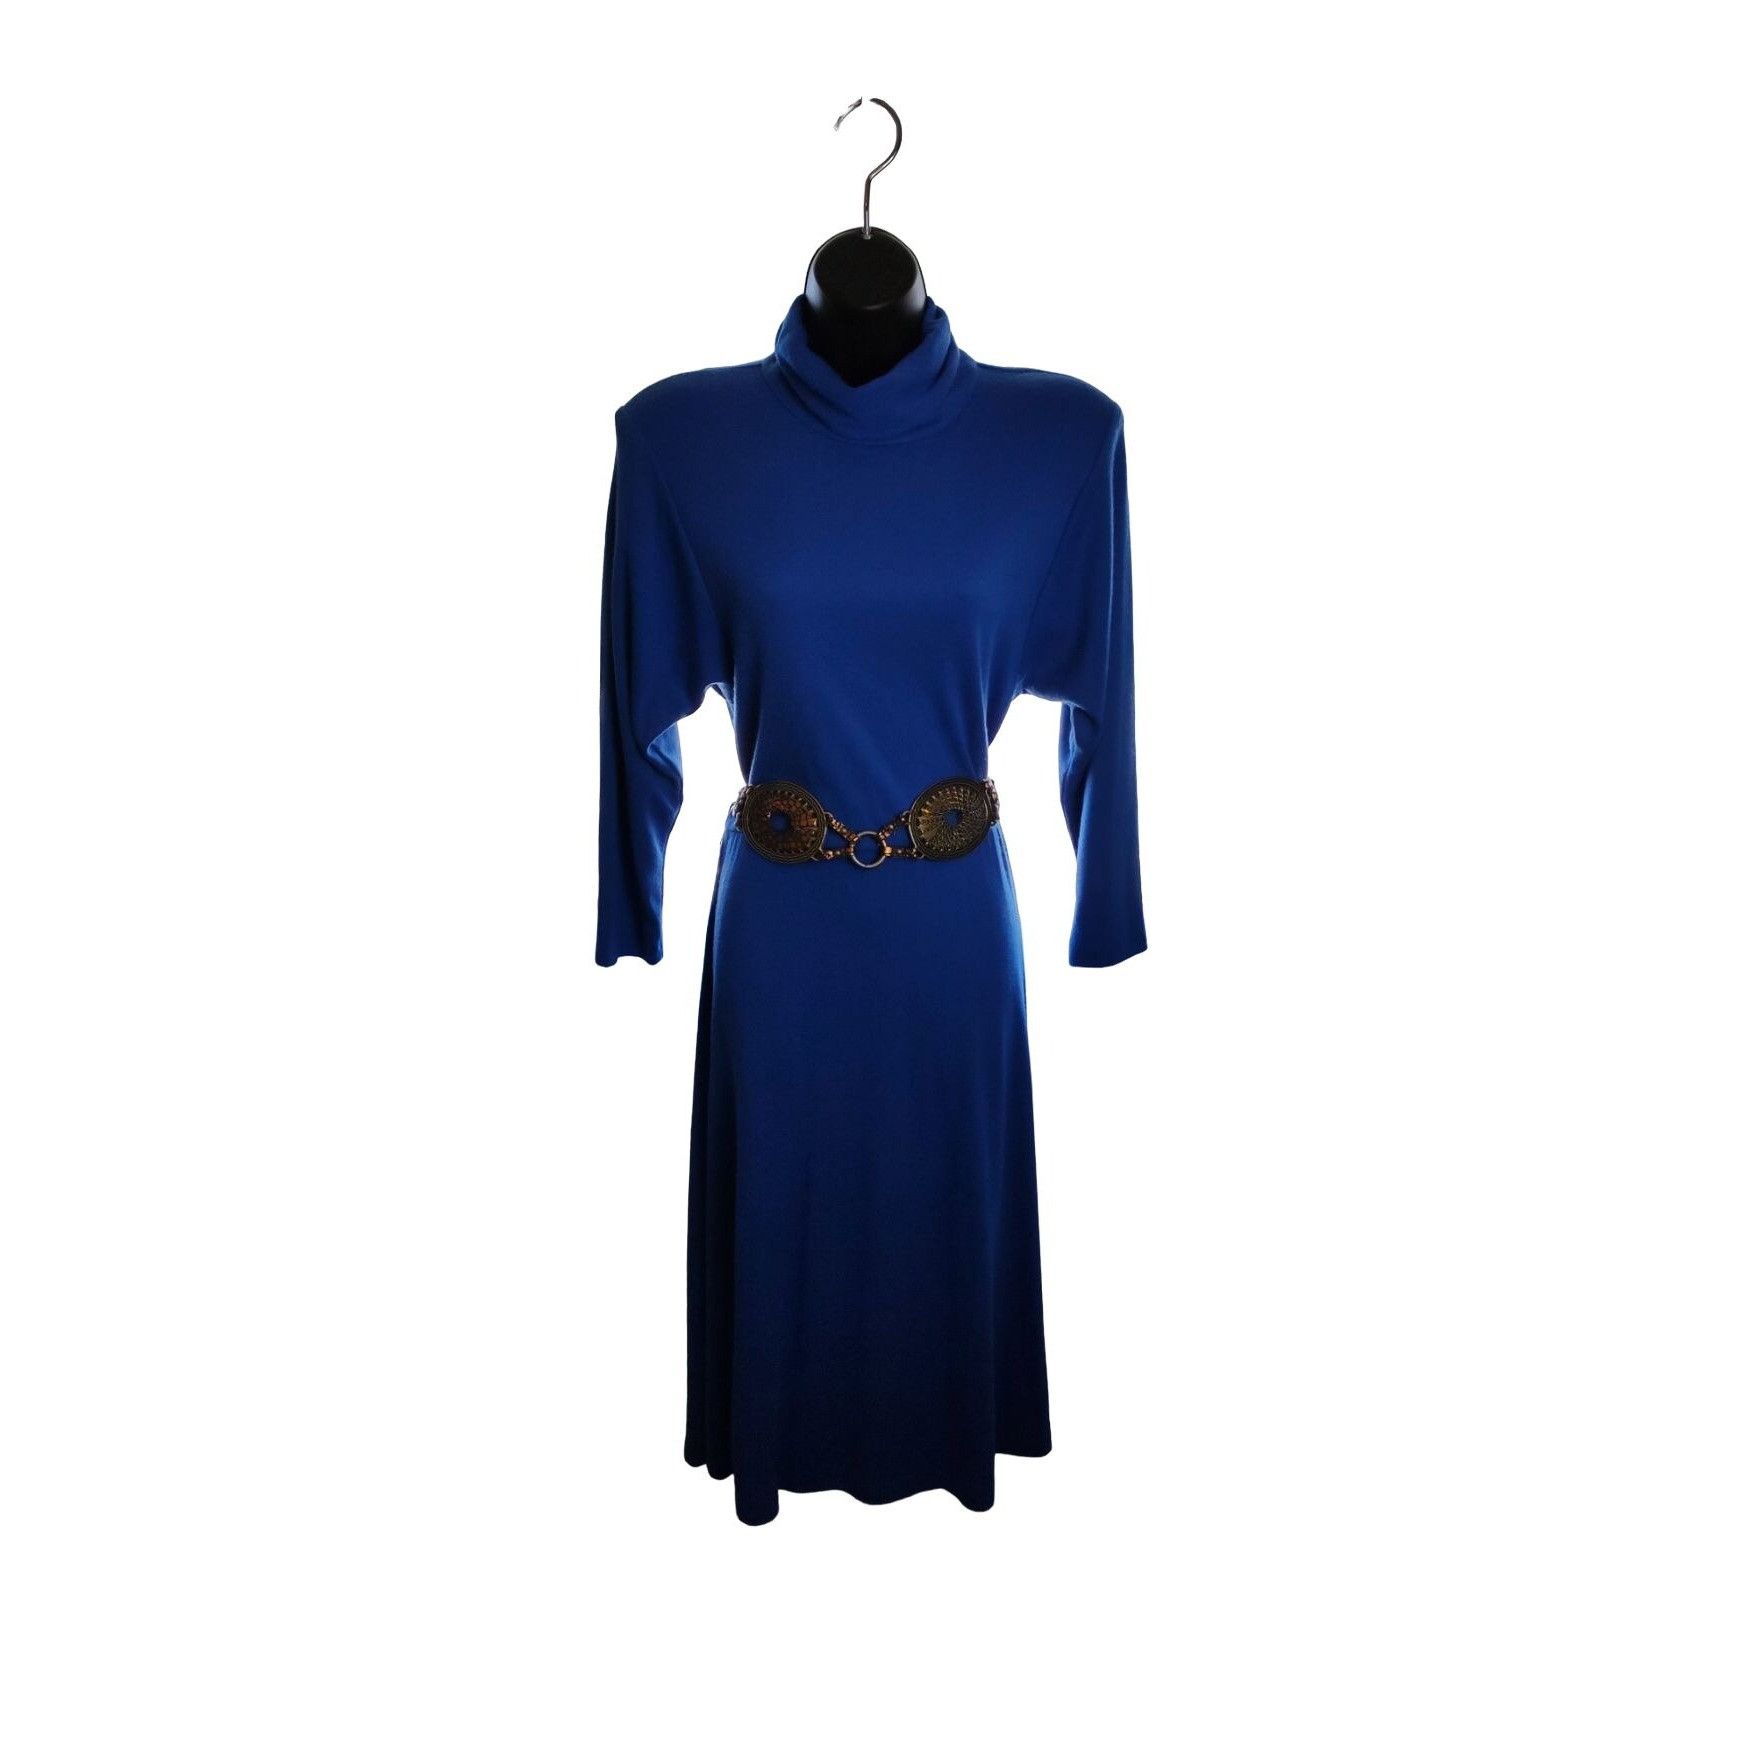 Vintage 1980's Joni Blair Blue Midi Dress Size M / US 6-8 / IT 42-44 - 1 Preview